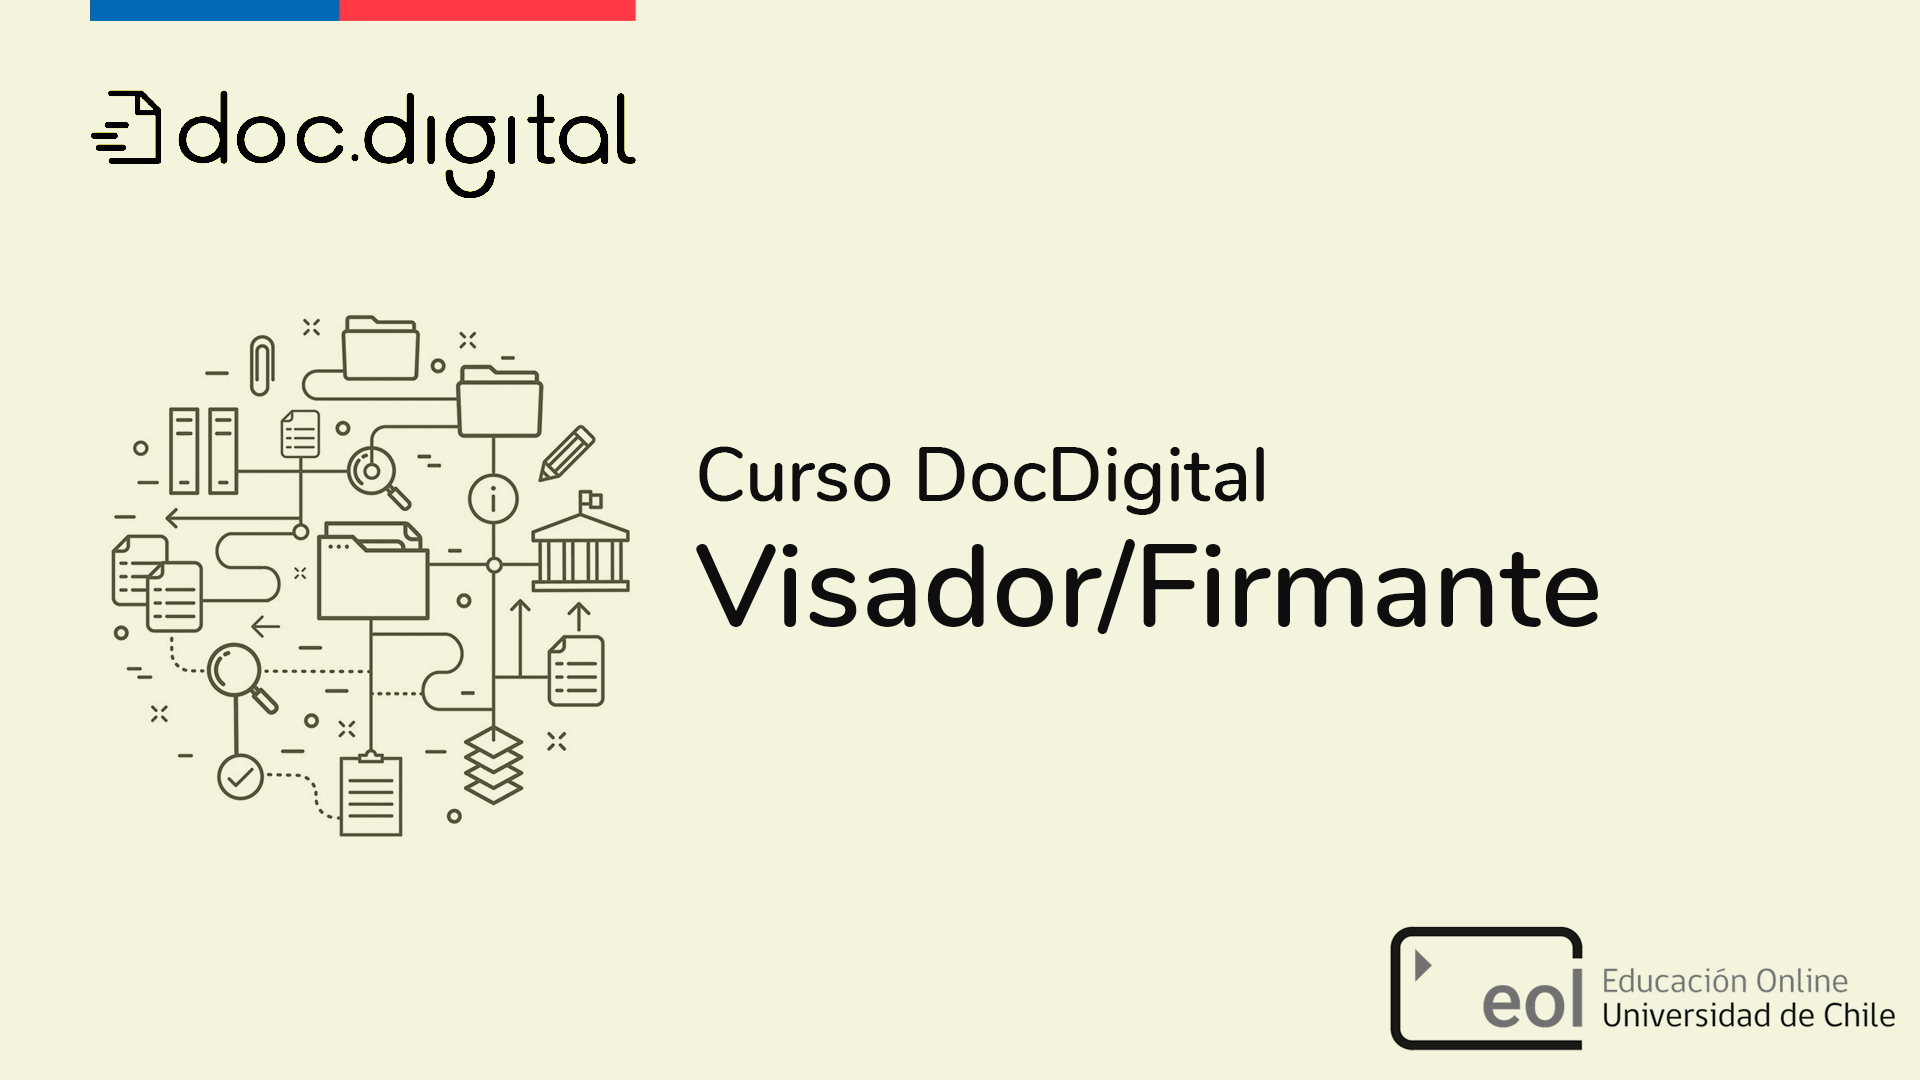 DocDigital Visador / Firmante ddvf001